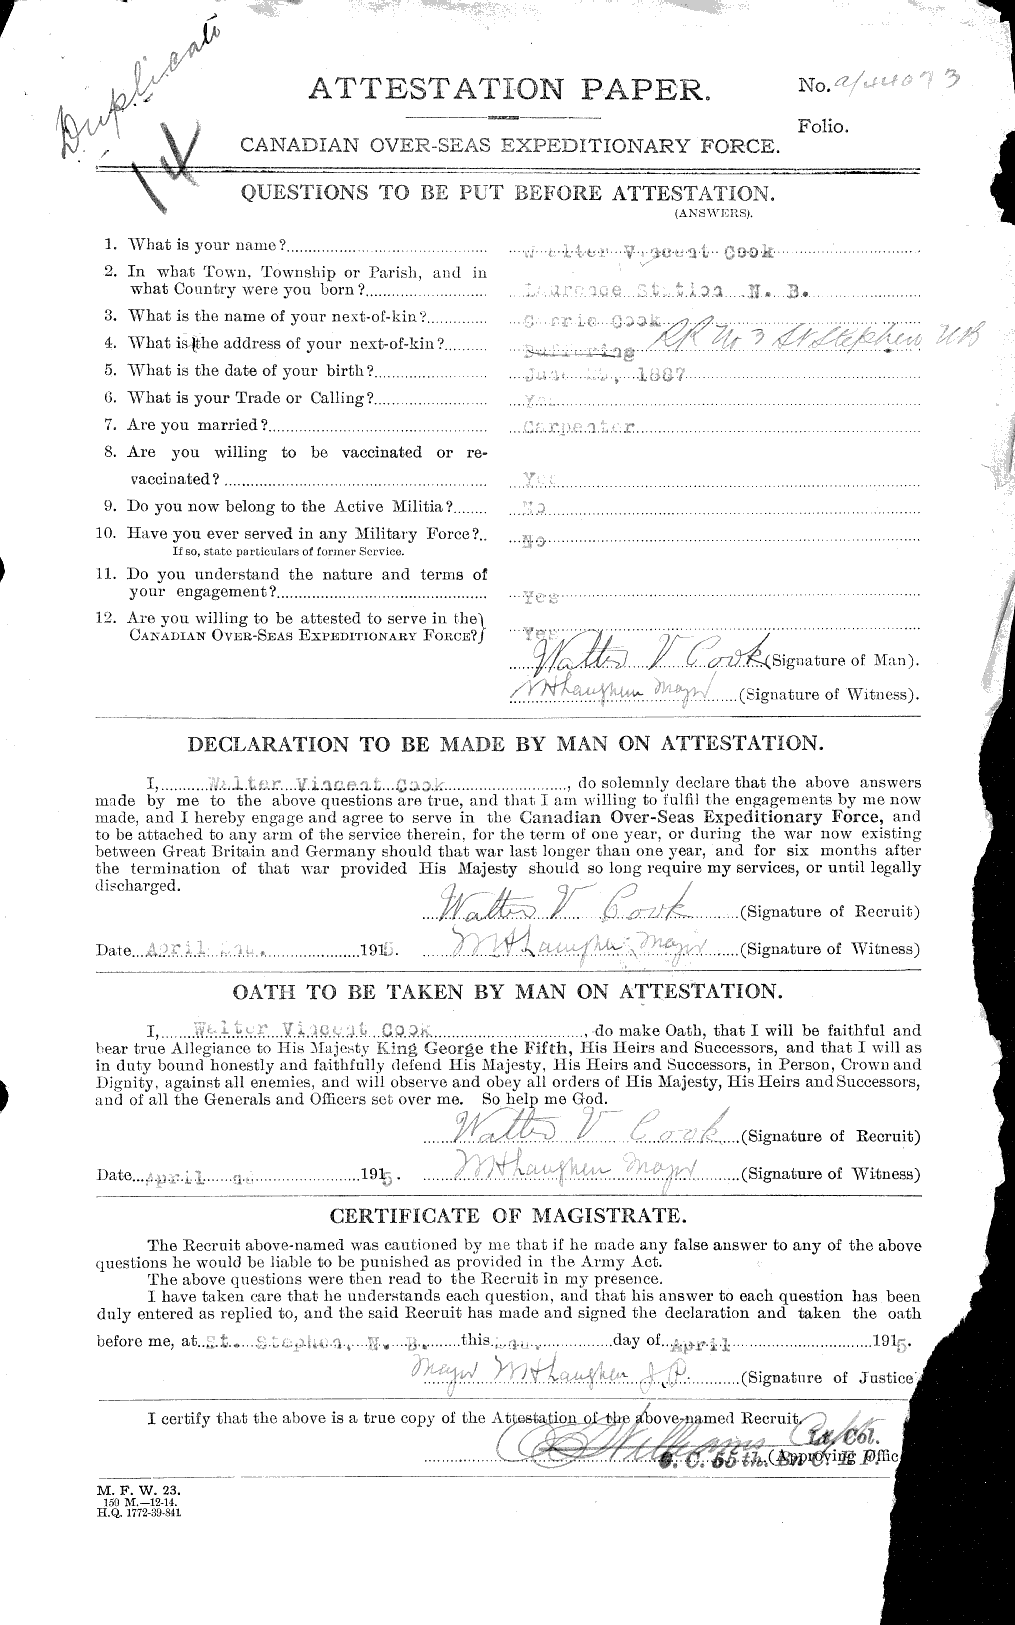 Dossiers du Personnel de la Première Guerre mondiale - CEC 039077a